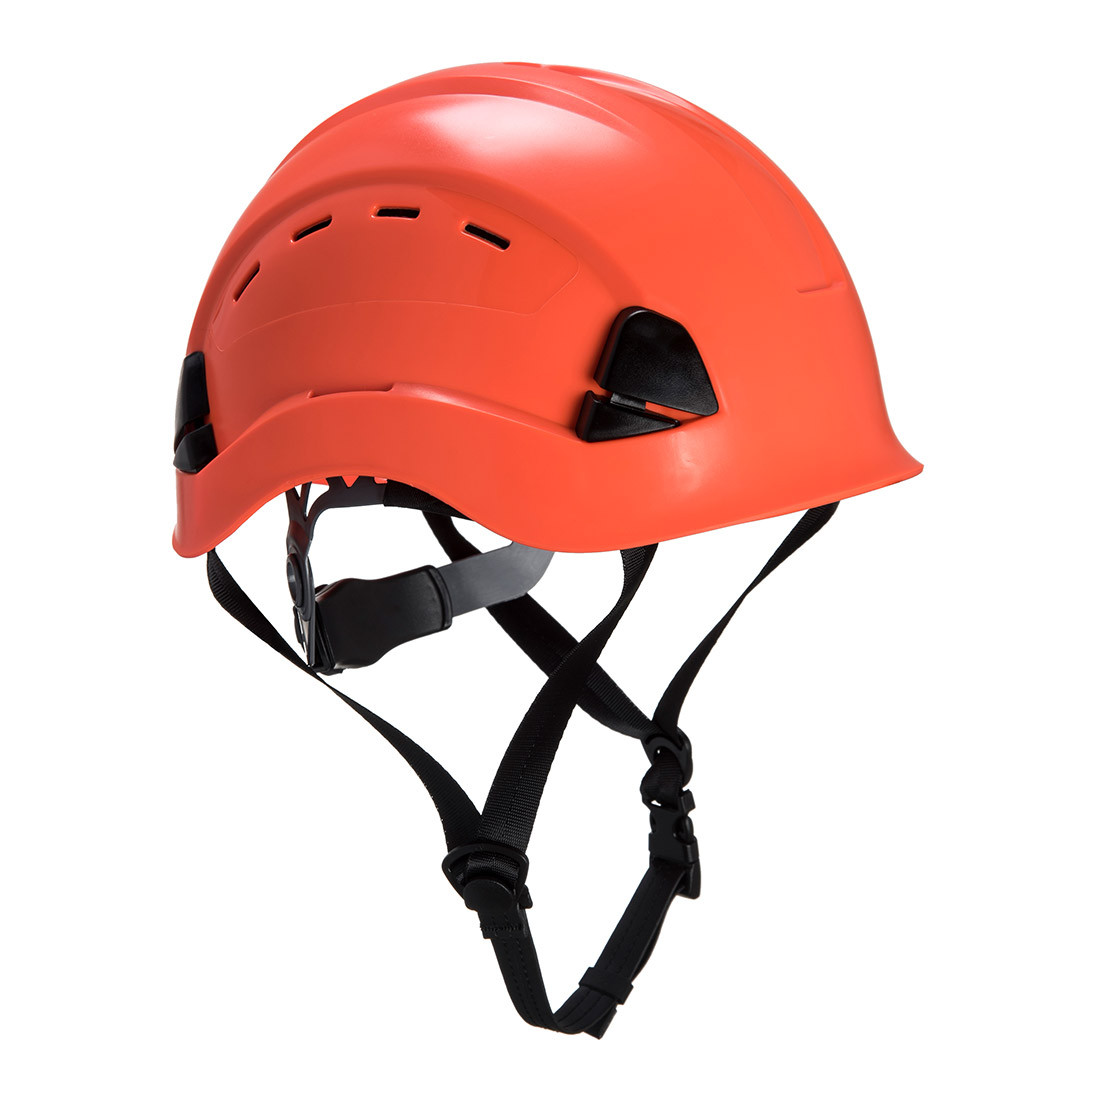 casque alpiniste Height Endurance - Les équipements de protection individuelle